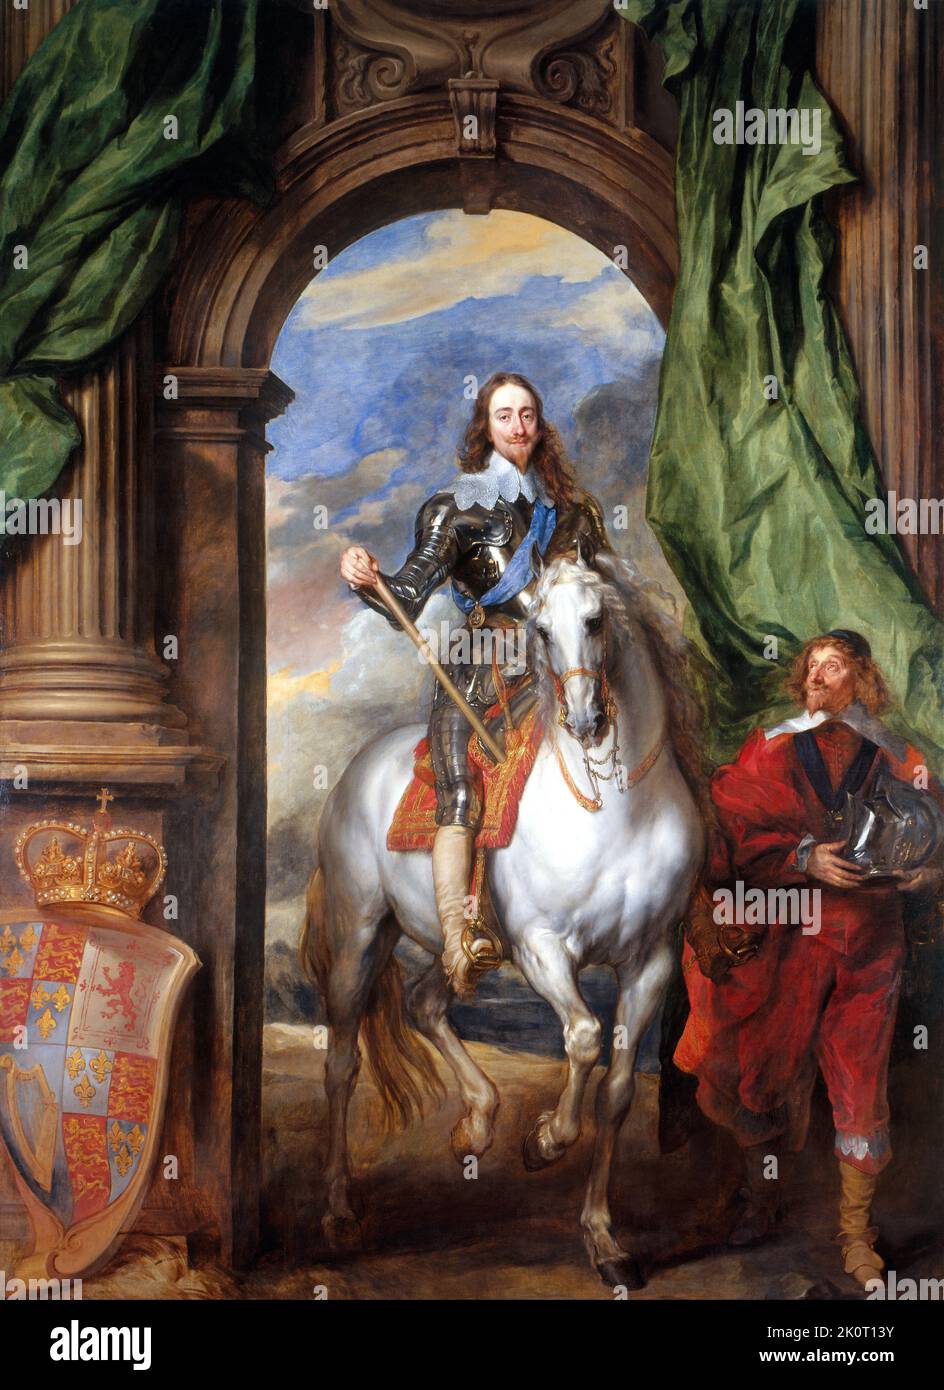 Le roi Charles I (19 novembre 1600 – 30 janvier 1649) fut roi d'Angleterre, d'Écosse et d'Irlande du 27 mars 1625 jusqu'à son exécution en 1649. Il est né dans la Maison de Stuart comme le deuxième fils du roi James VI d'Écosse. Vu ici dans un portrait de 1634 par Anthony van Dyck. Image de domaine public en vertu de l'âge. Vu ici dans un portrait de 1636 par Anthony van Dyck. Image de domaine public en vertu de l'âge. Banque D'Images